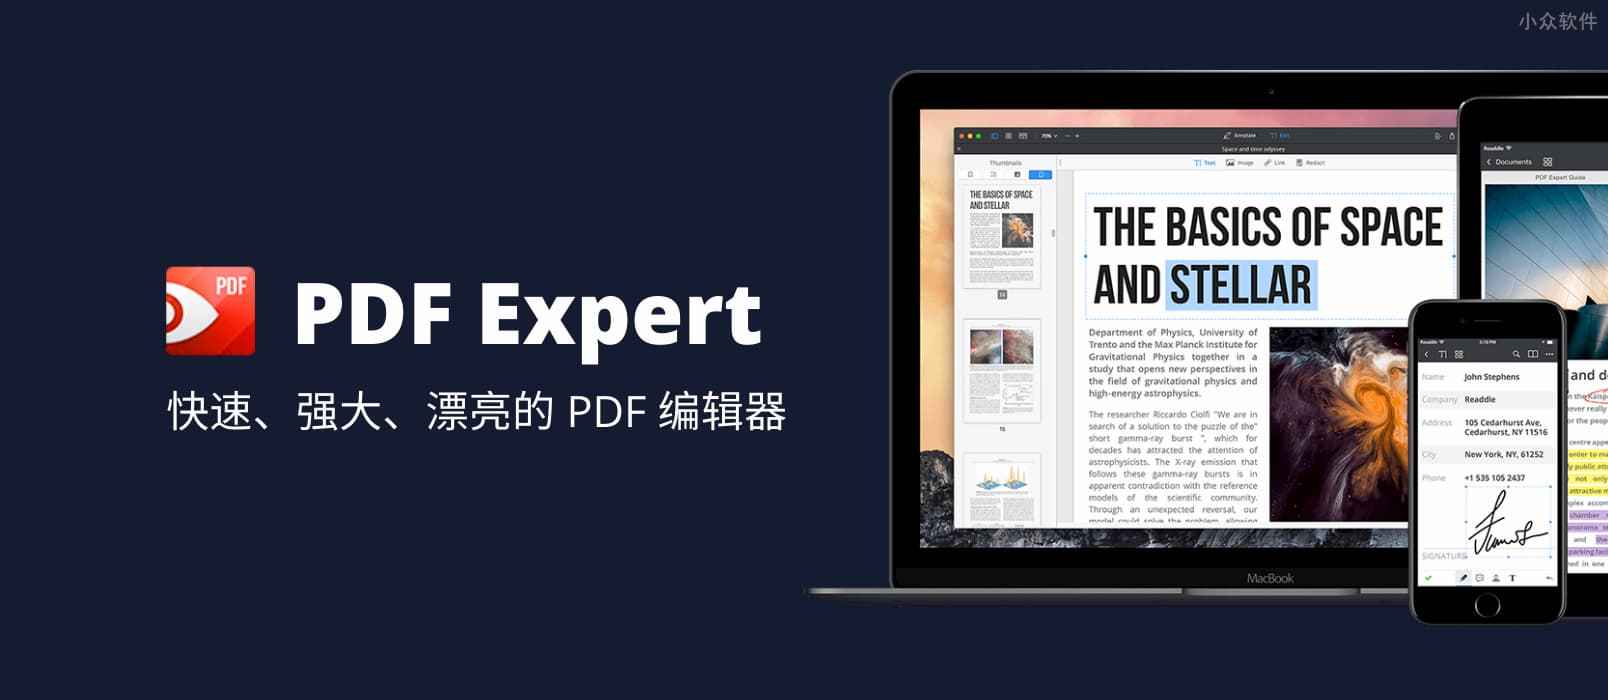 正版软件优惠，Mac 电脑下的全功能 PDF 工具：PDF Expert